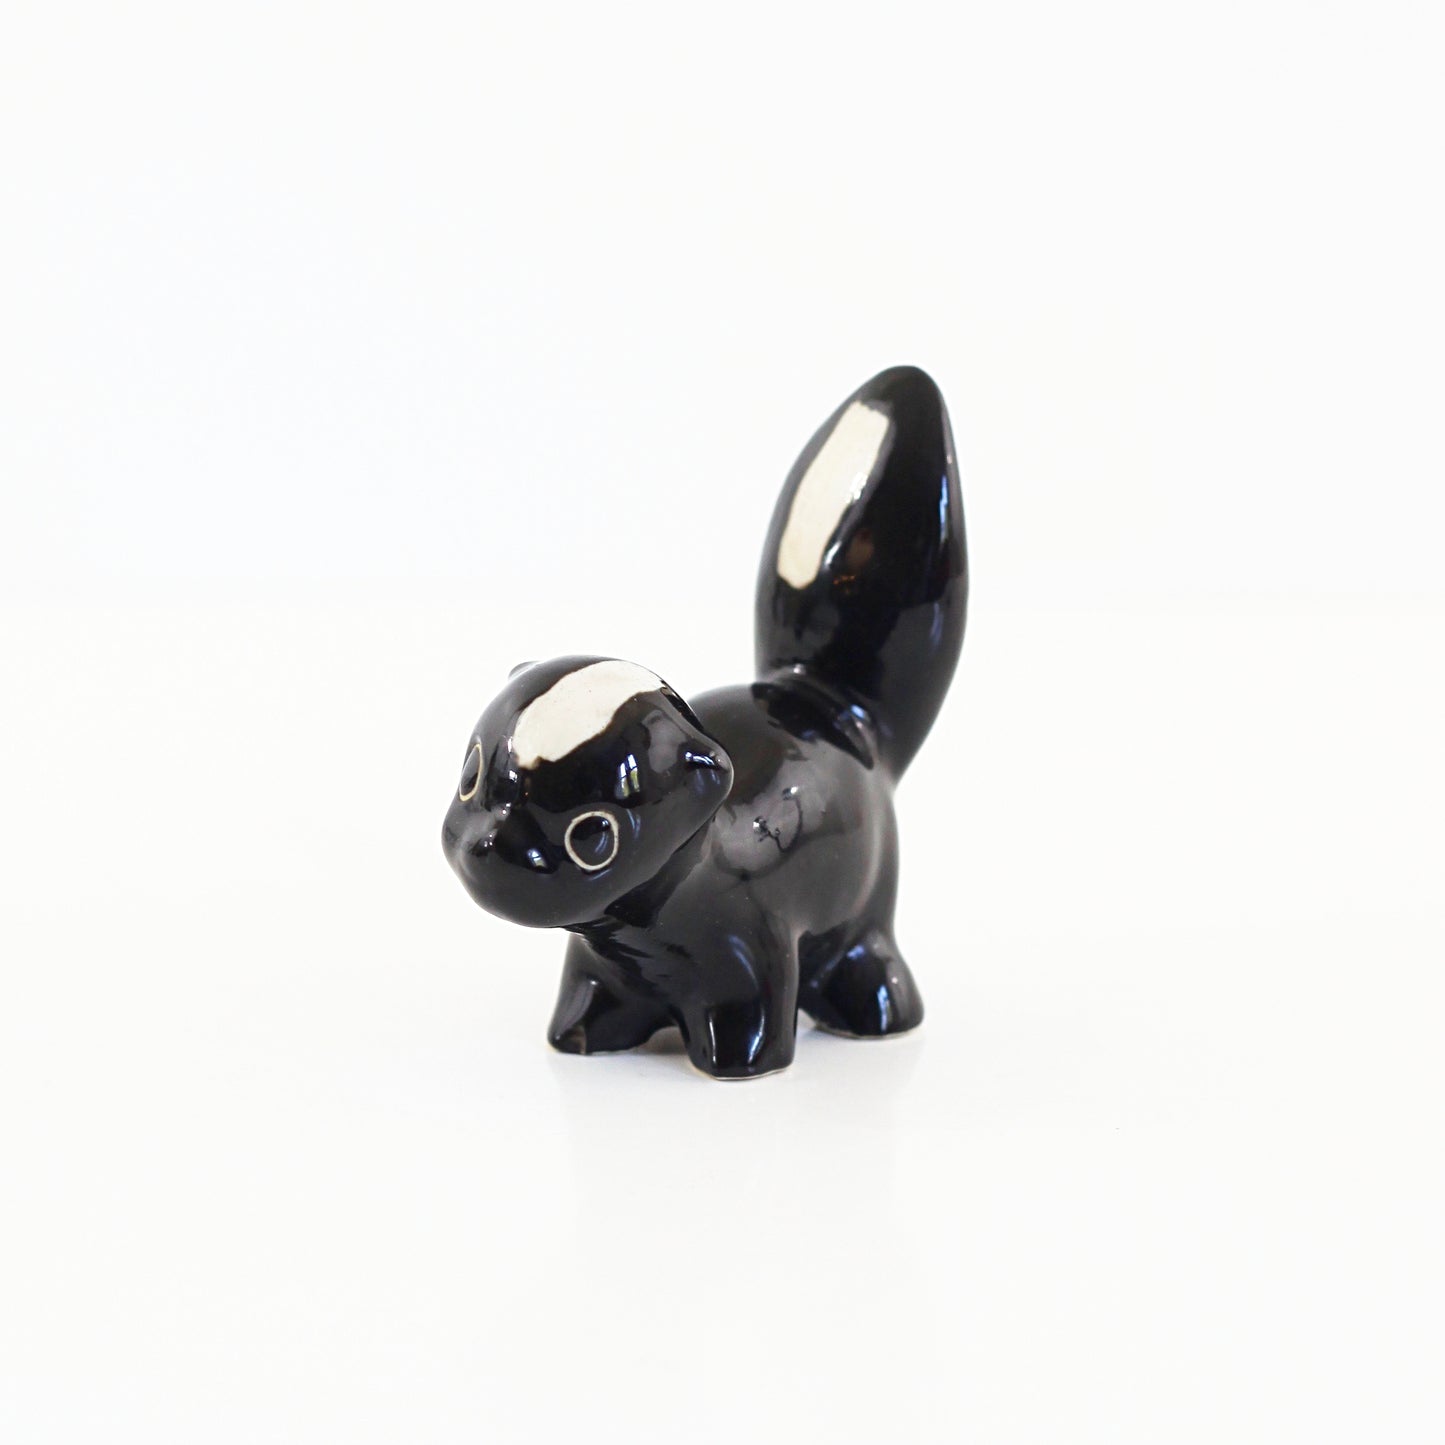 SOLD - Mid Century Ceramic Skunk Figurine